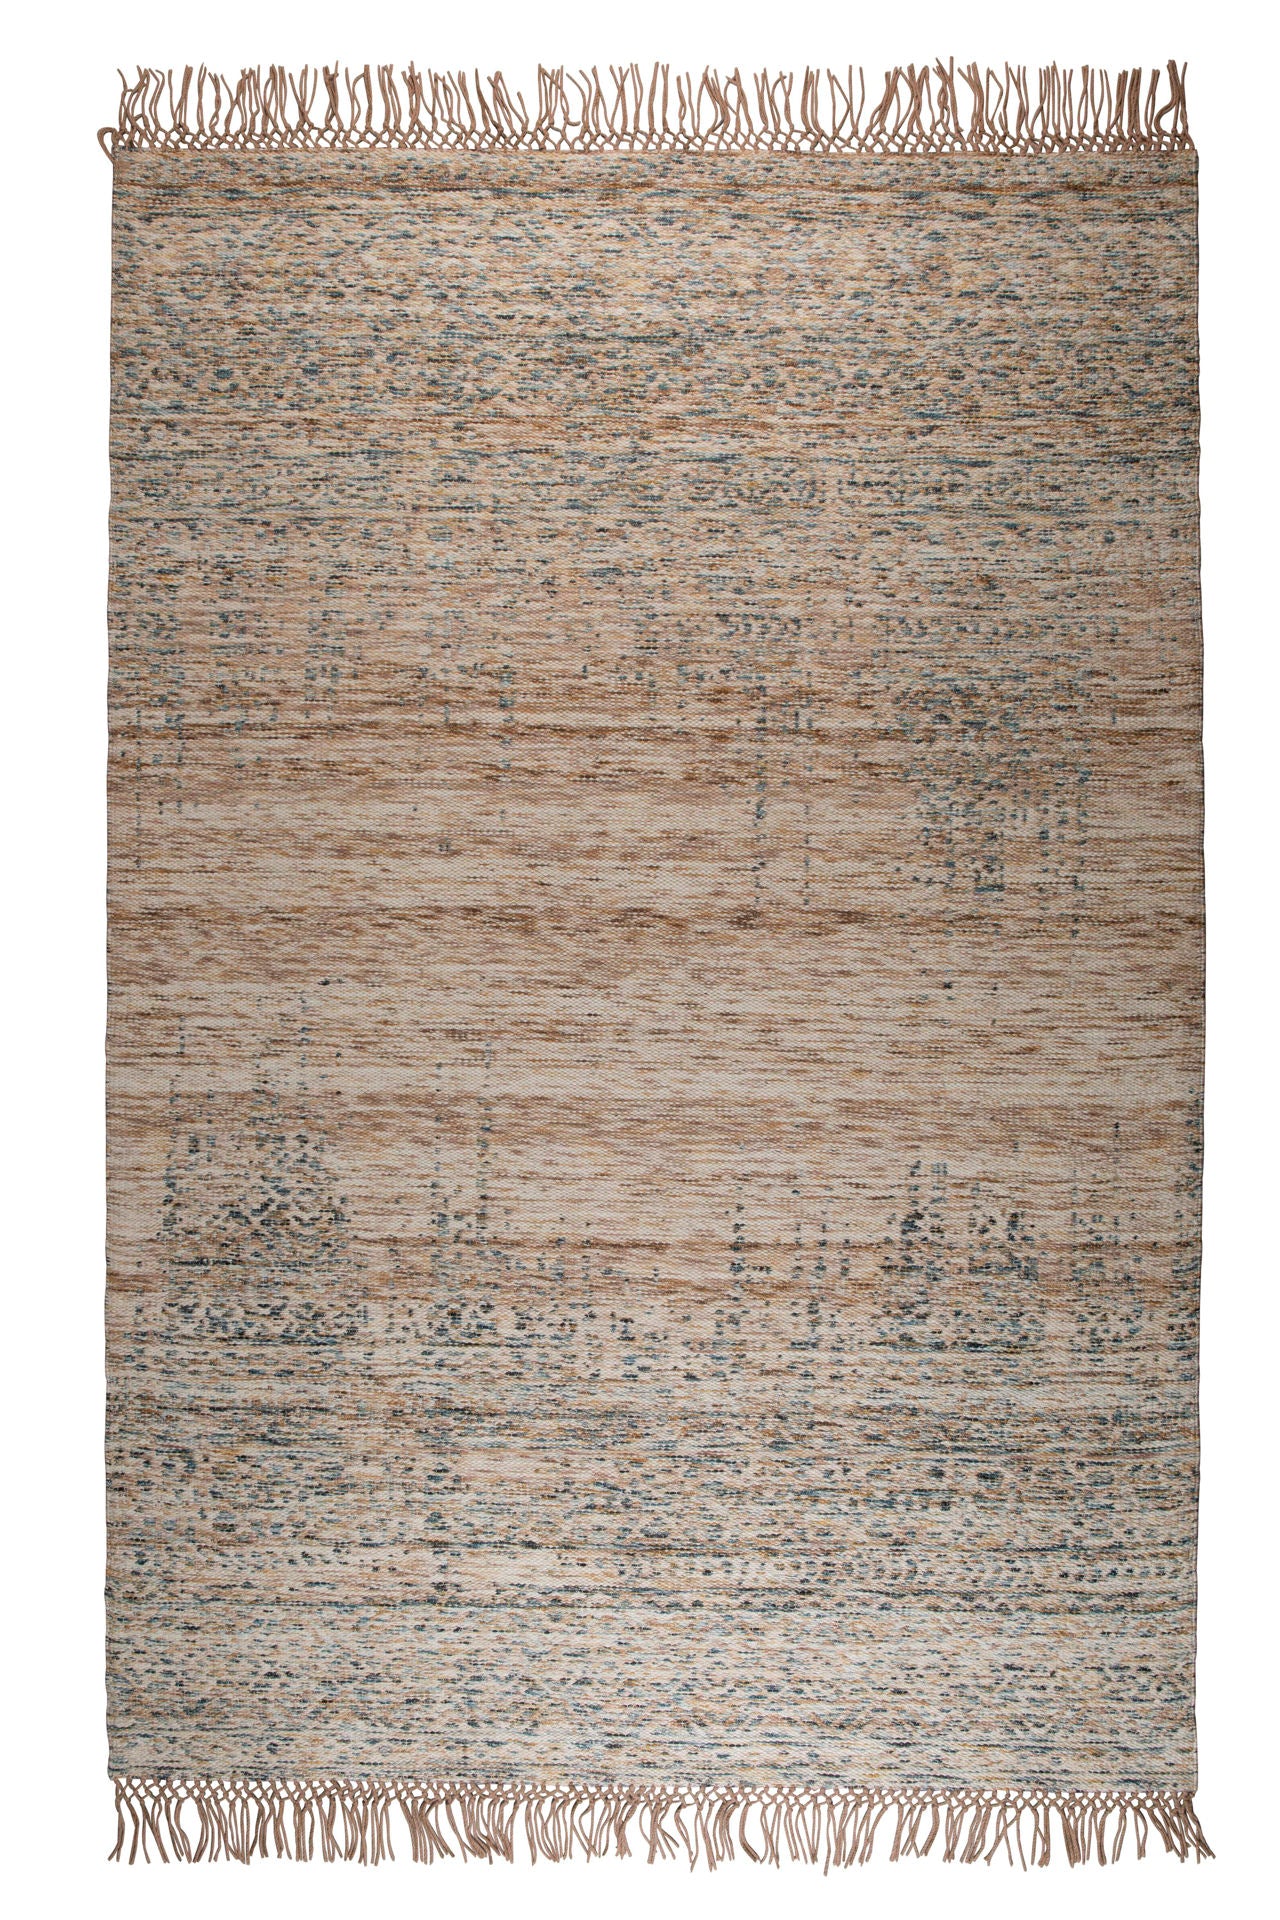 Tapis Nancy's Darby - Classique - Beige - Laine, Polyester, Coton - 200 cm x 300 cm x cm